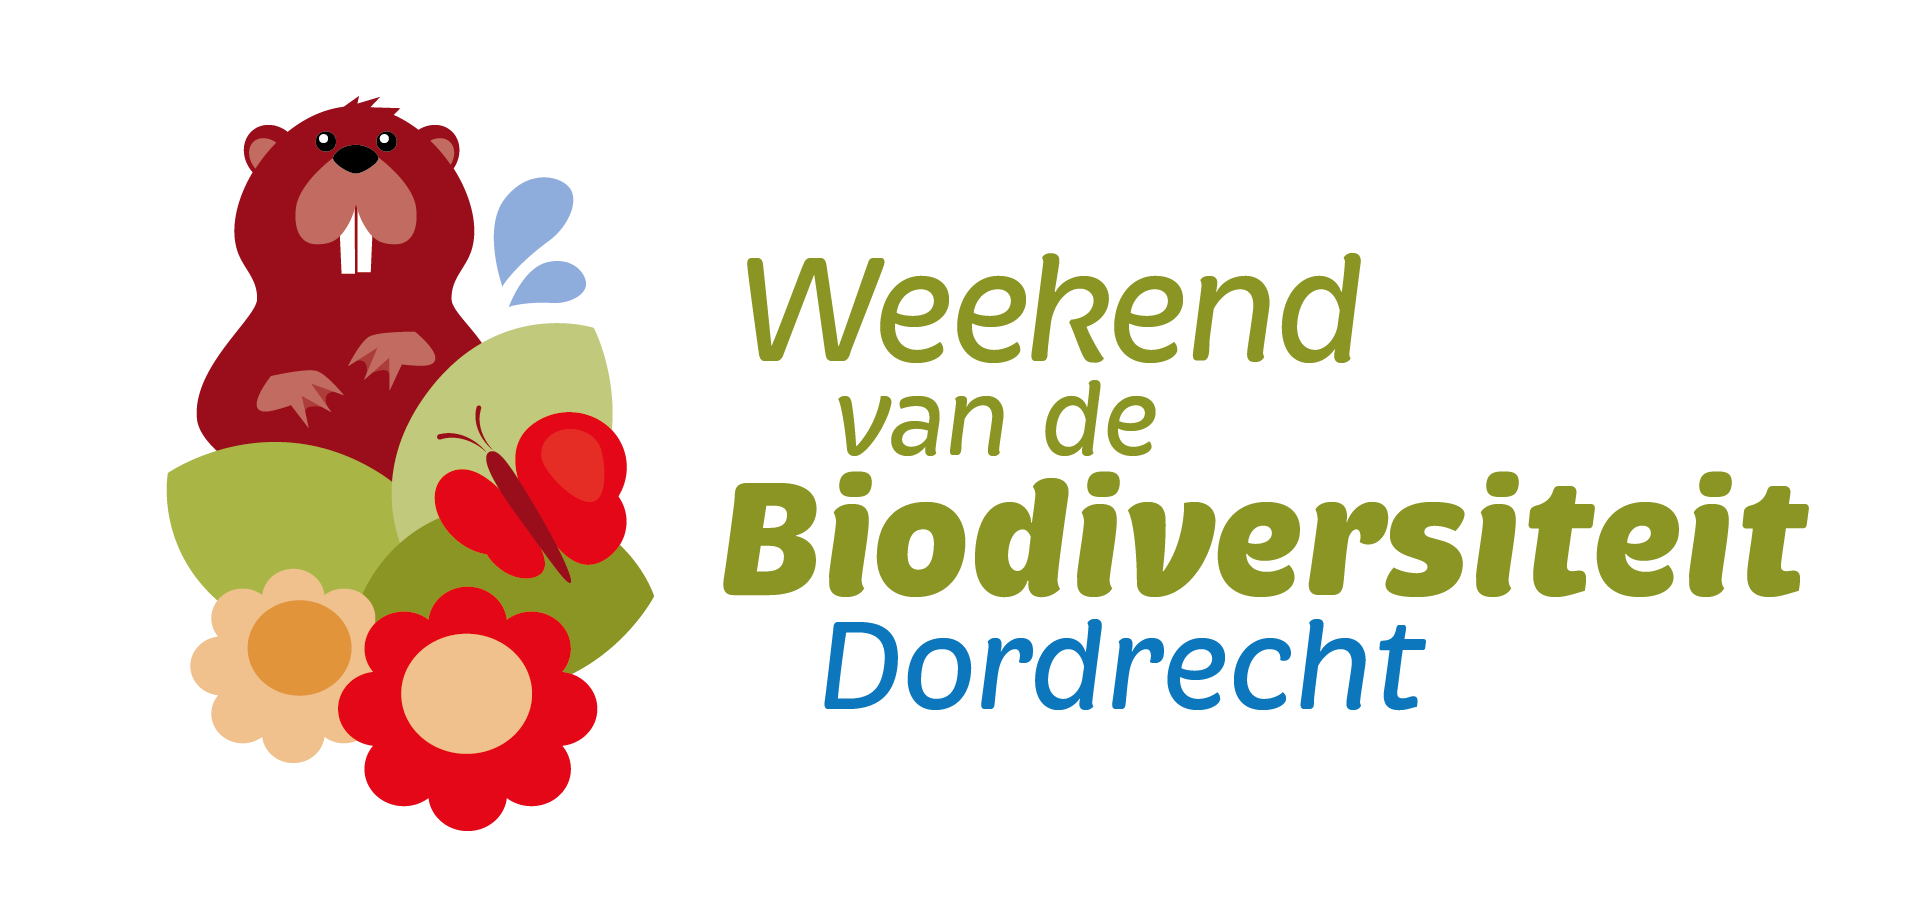 Weekend van de Biodiversiteit